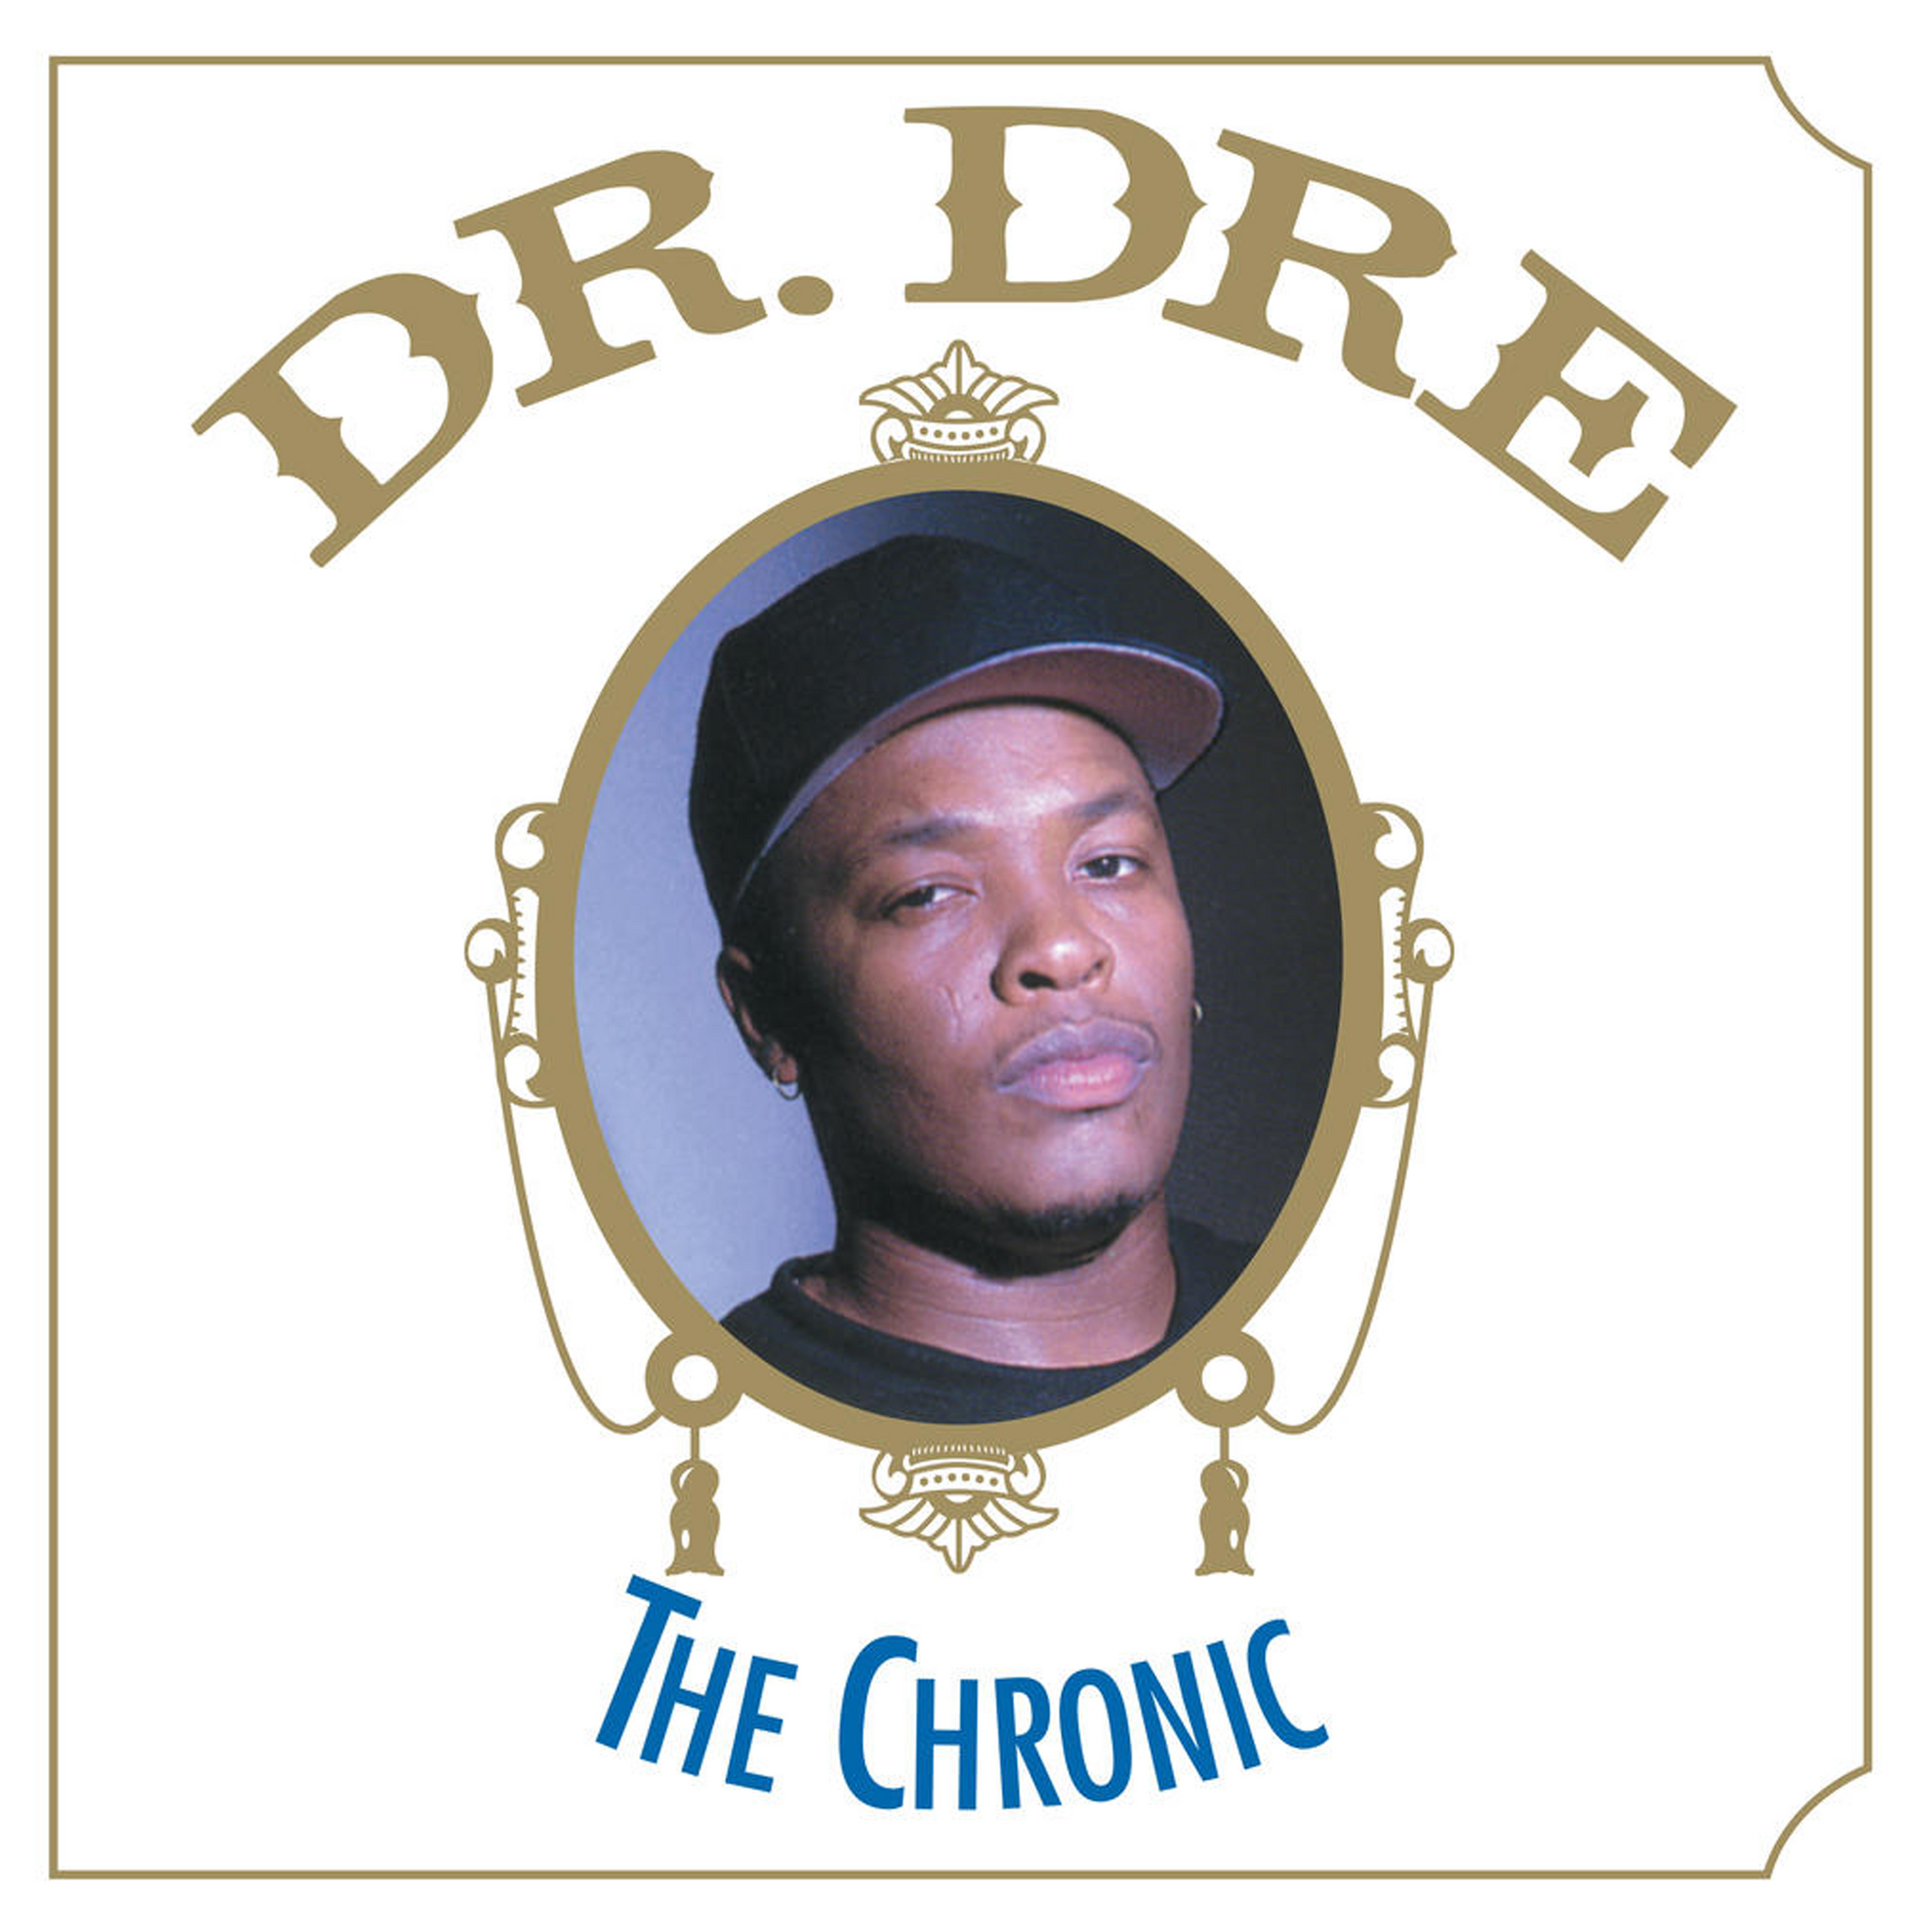 Dr. Dre - The Chronic - CD